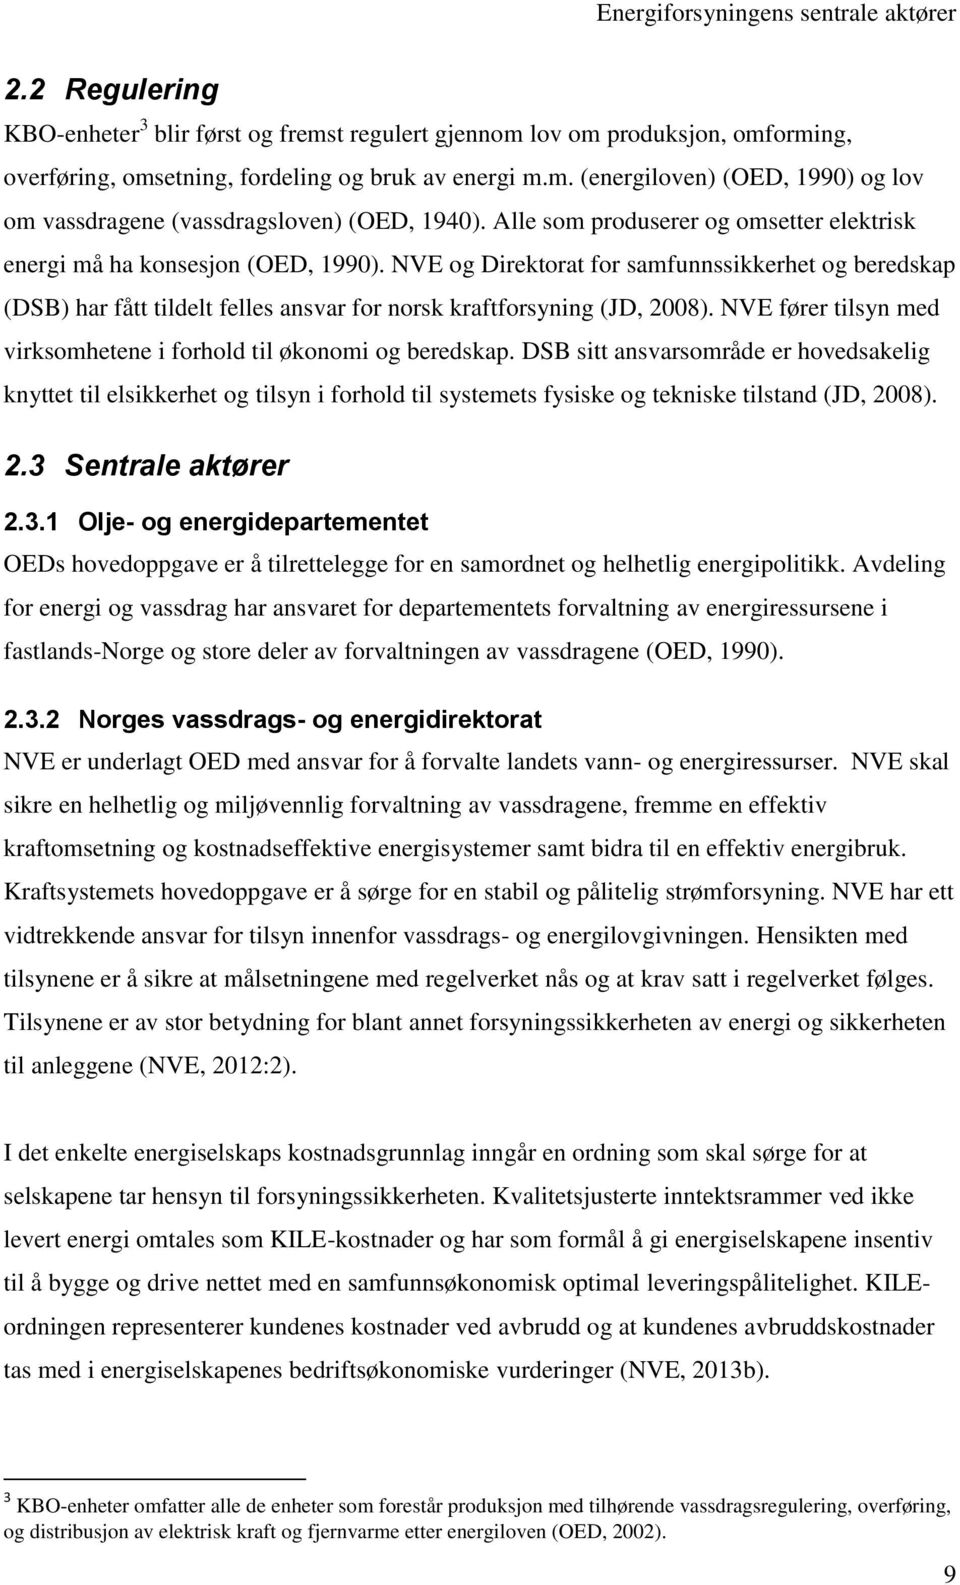 NVE og Direktorat for samfunnssikkerhet og beredskap (DSB) har fått tildelt felles ansvar for norsk kraftforsyning (JD, 2008). NVE fører tilsyn med virksomhetene i forhold til økonomi og beredskap.